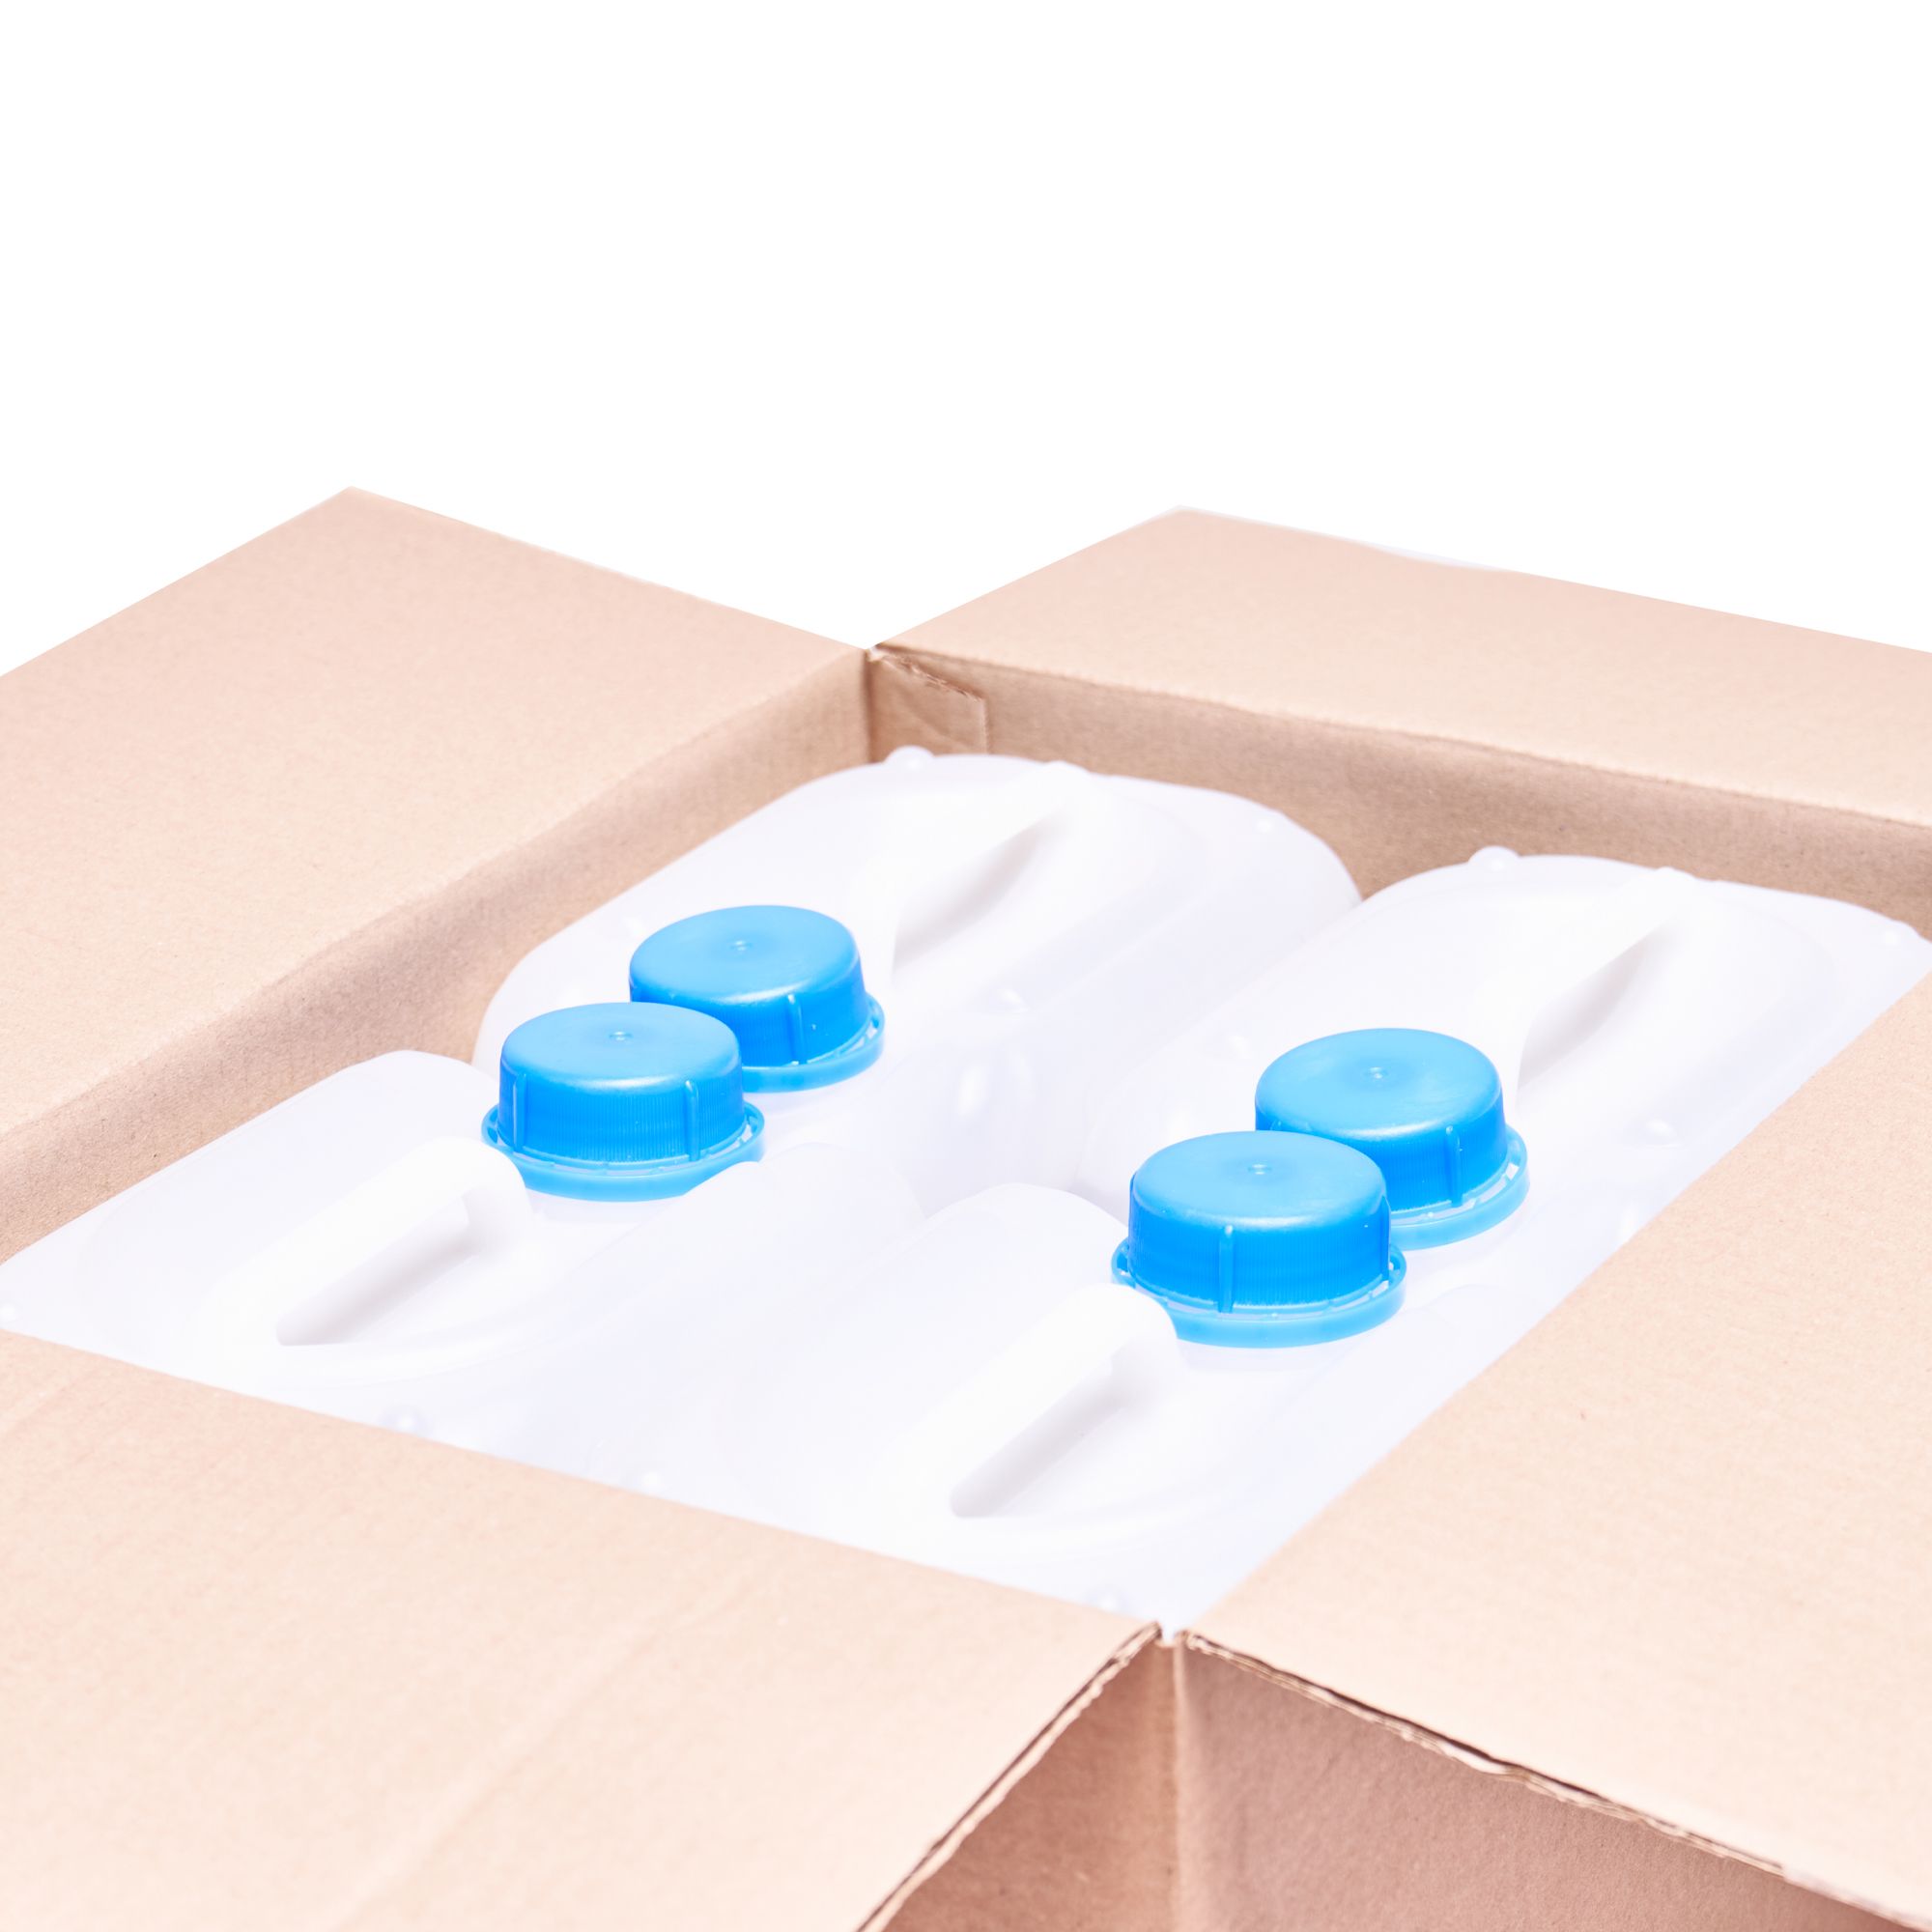 ХИТДезЛайт дезинфицирующее средство — пластиковые канистры в коробке